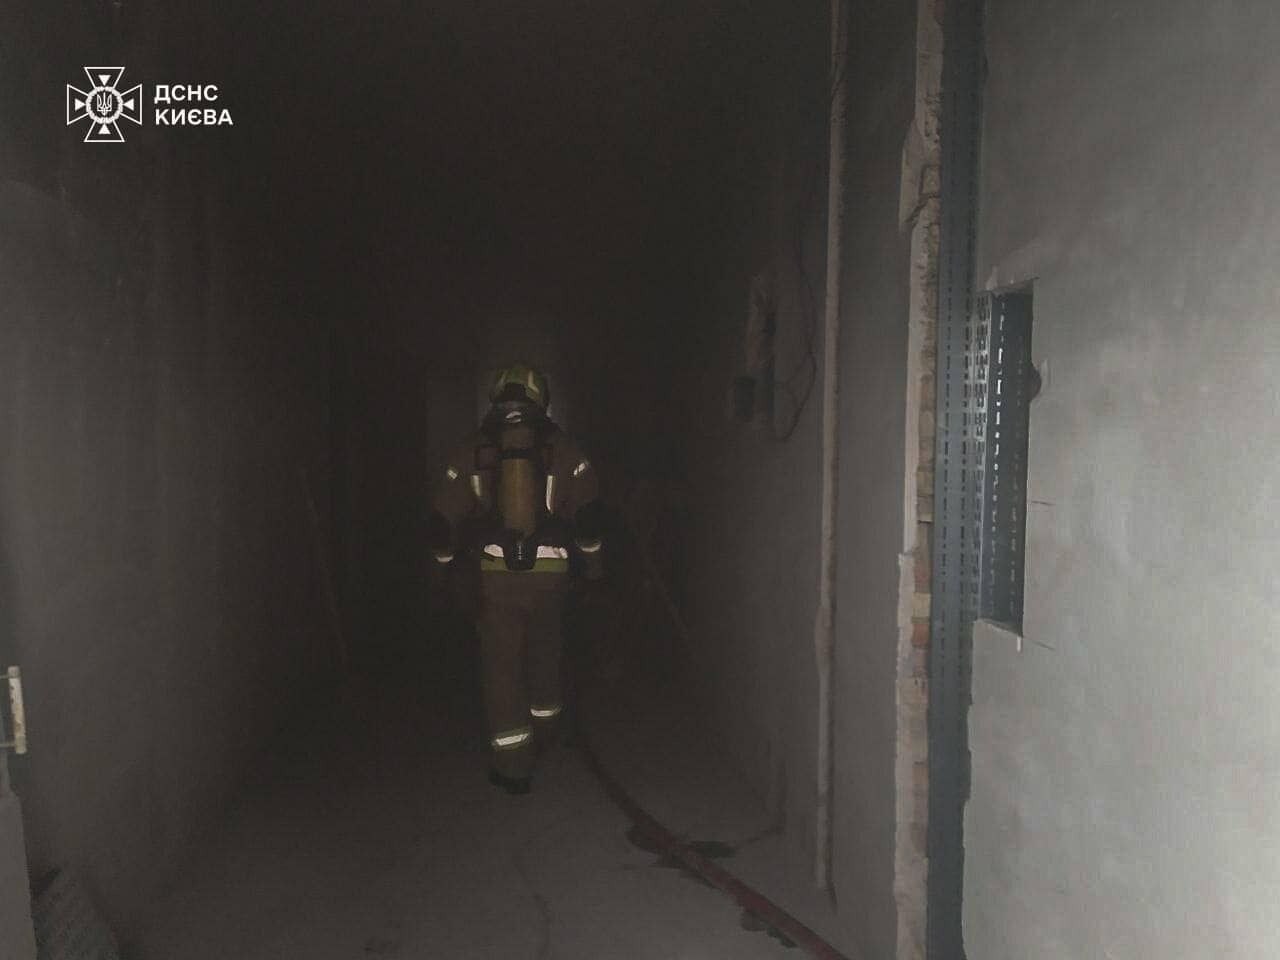 У Києві сталась пожежа на території пологового будинку. Подробиці та фото